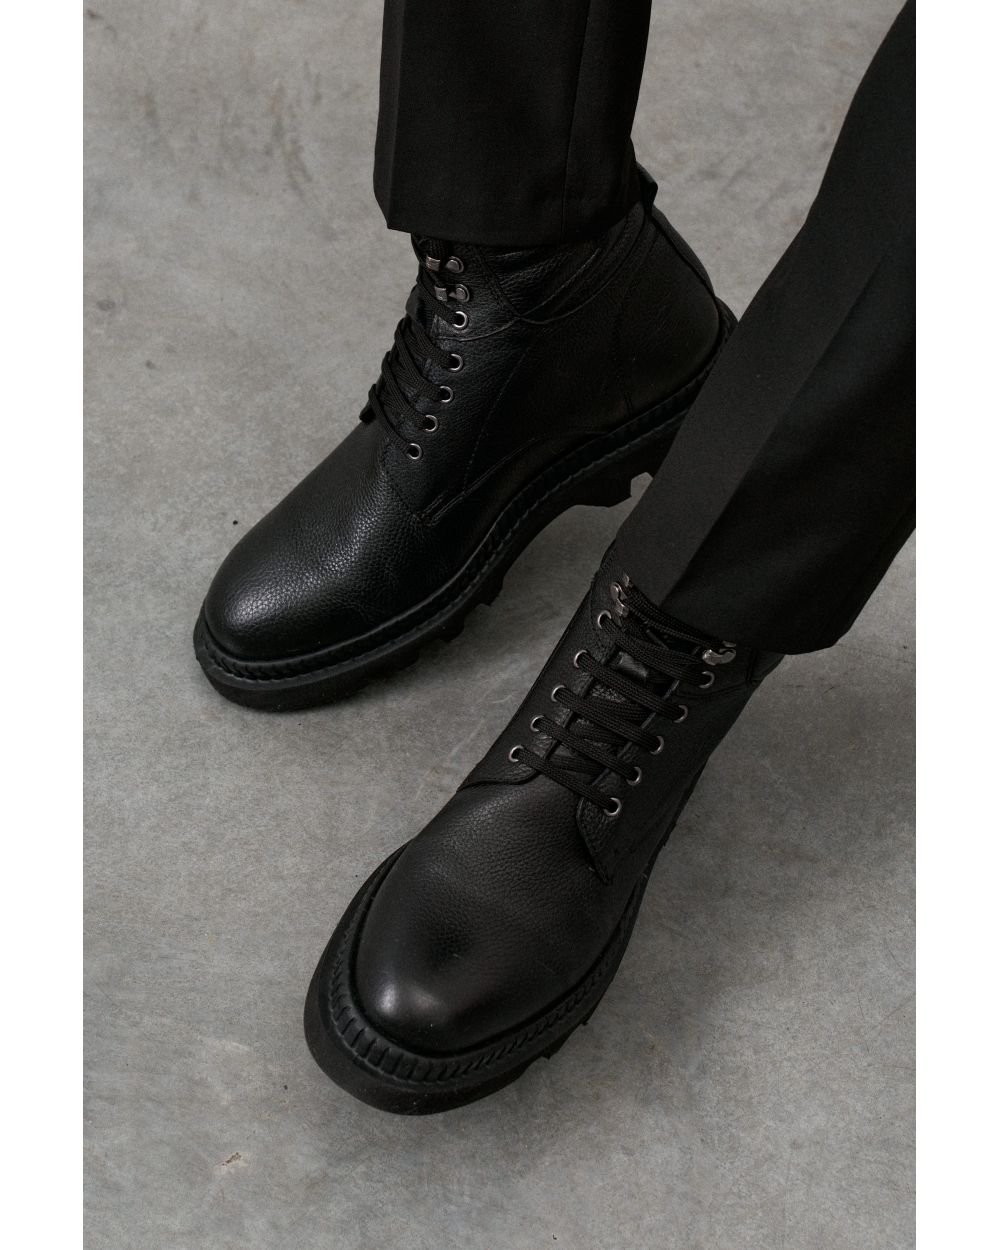 Ботинки мужские черные на шнурках, кожа флотер